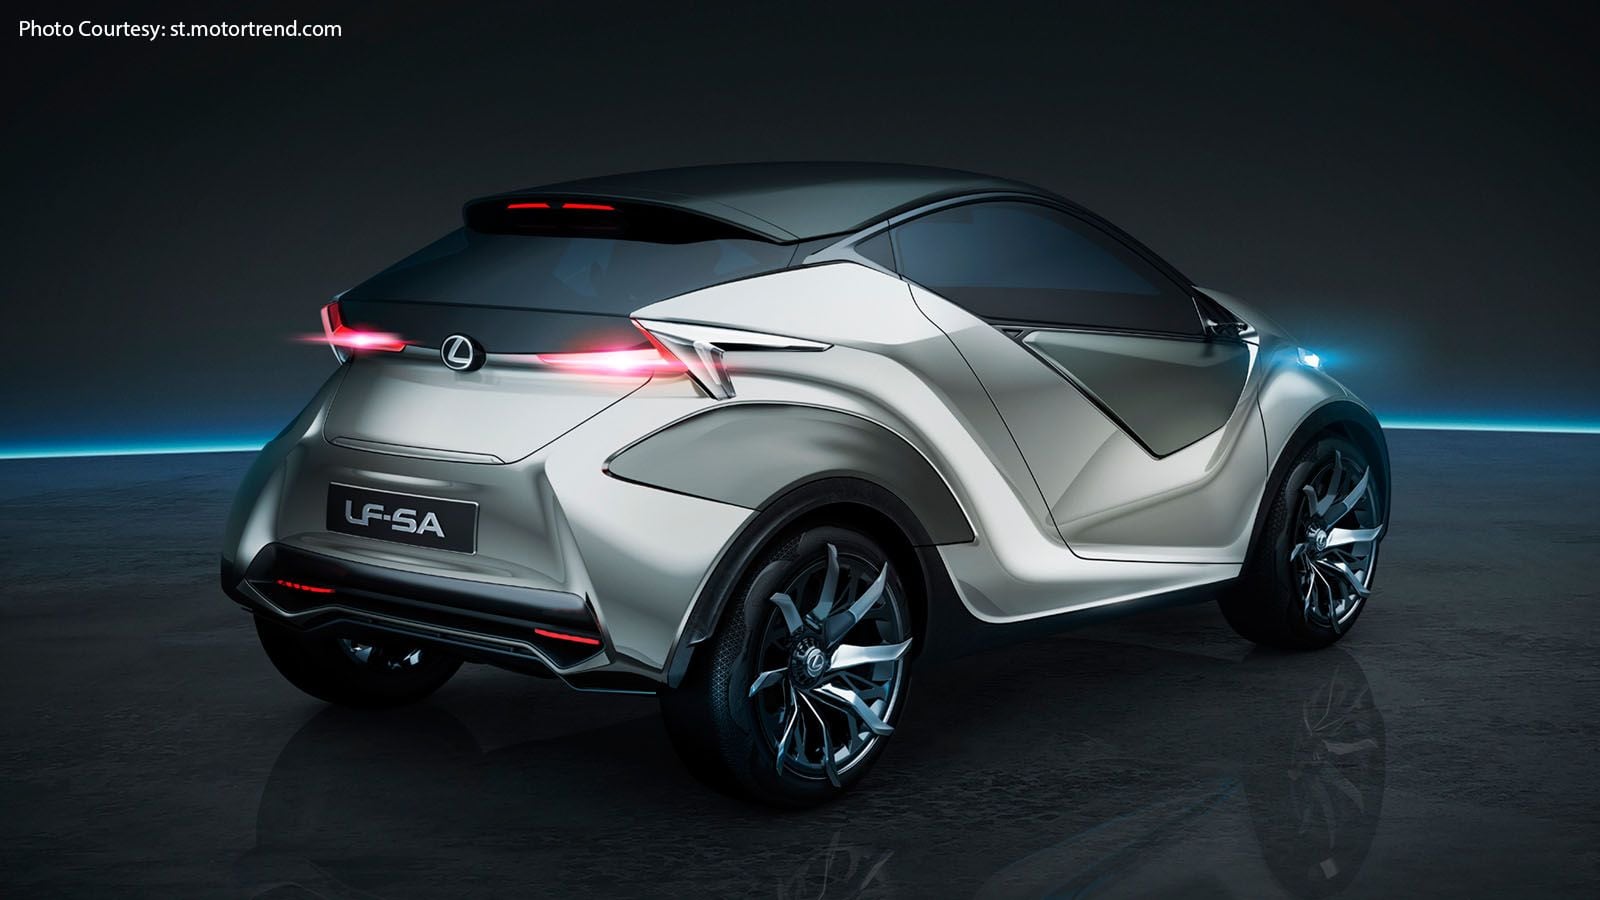 Little Lexus LF-SA Concept is the Smarter Car (Photos) | Clublexus